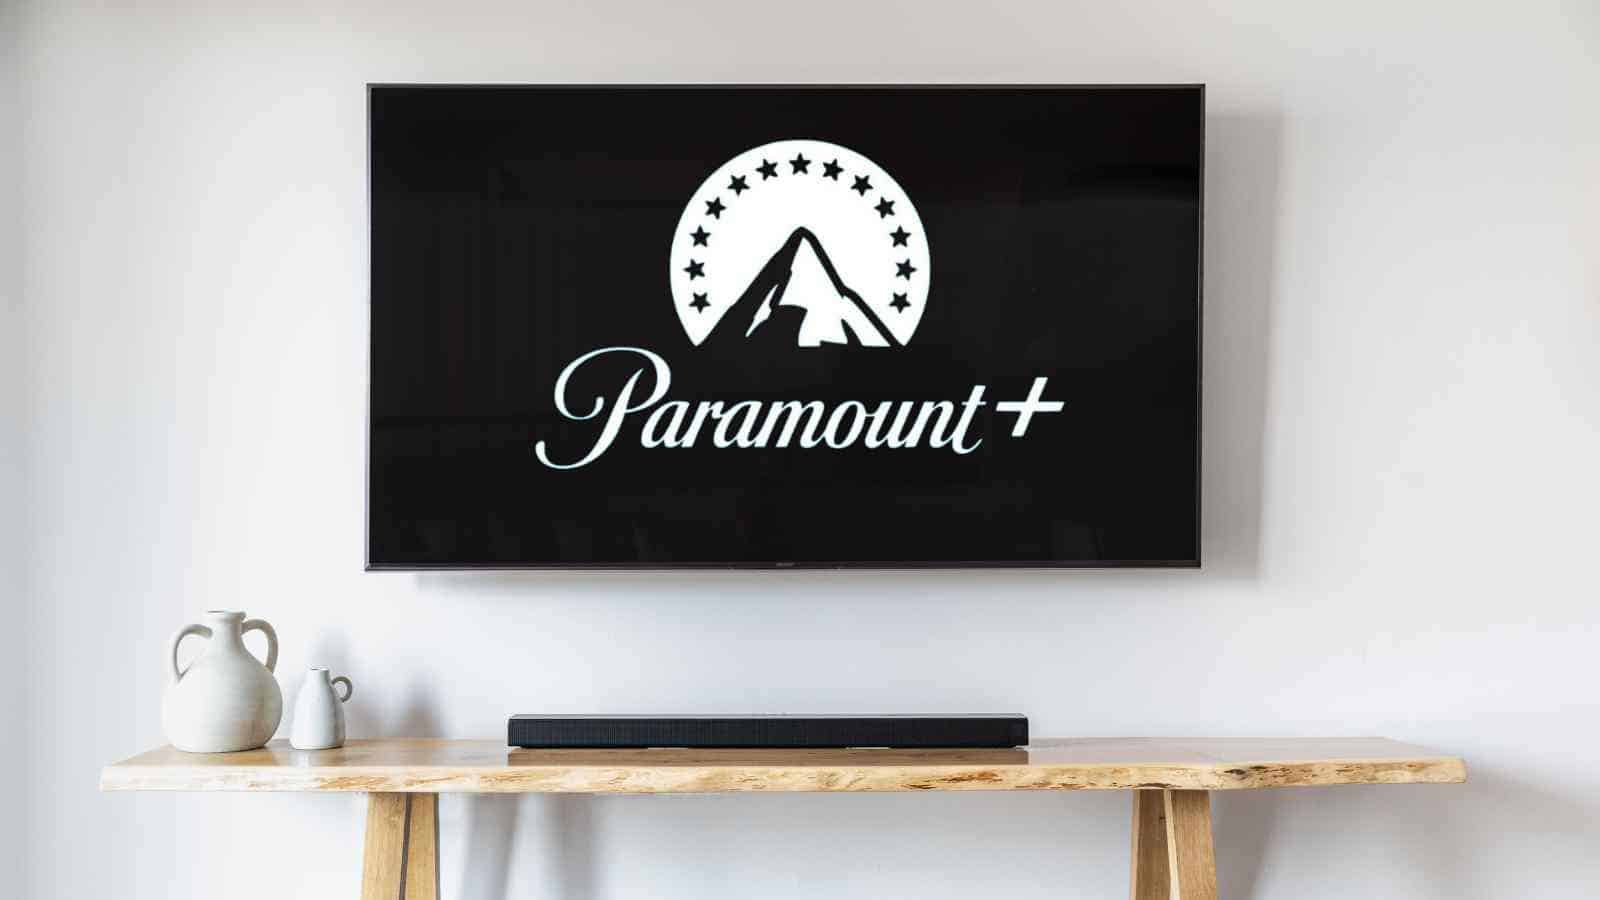 La Paramount+ aumenta i prezzi di molti degli abbonamenti negli Stati Uniti, noi italiani cosa dobbiamo aspettarci in merito?